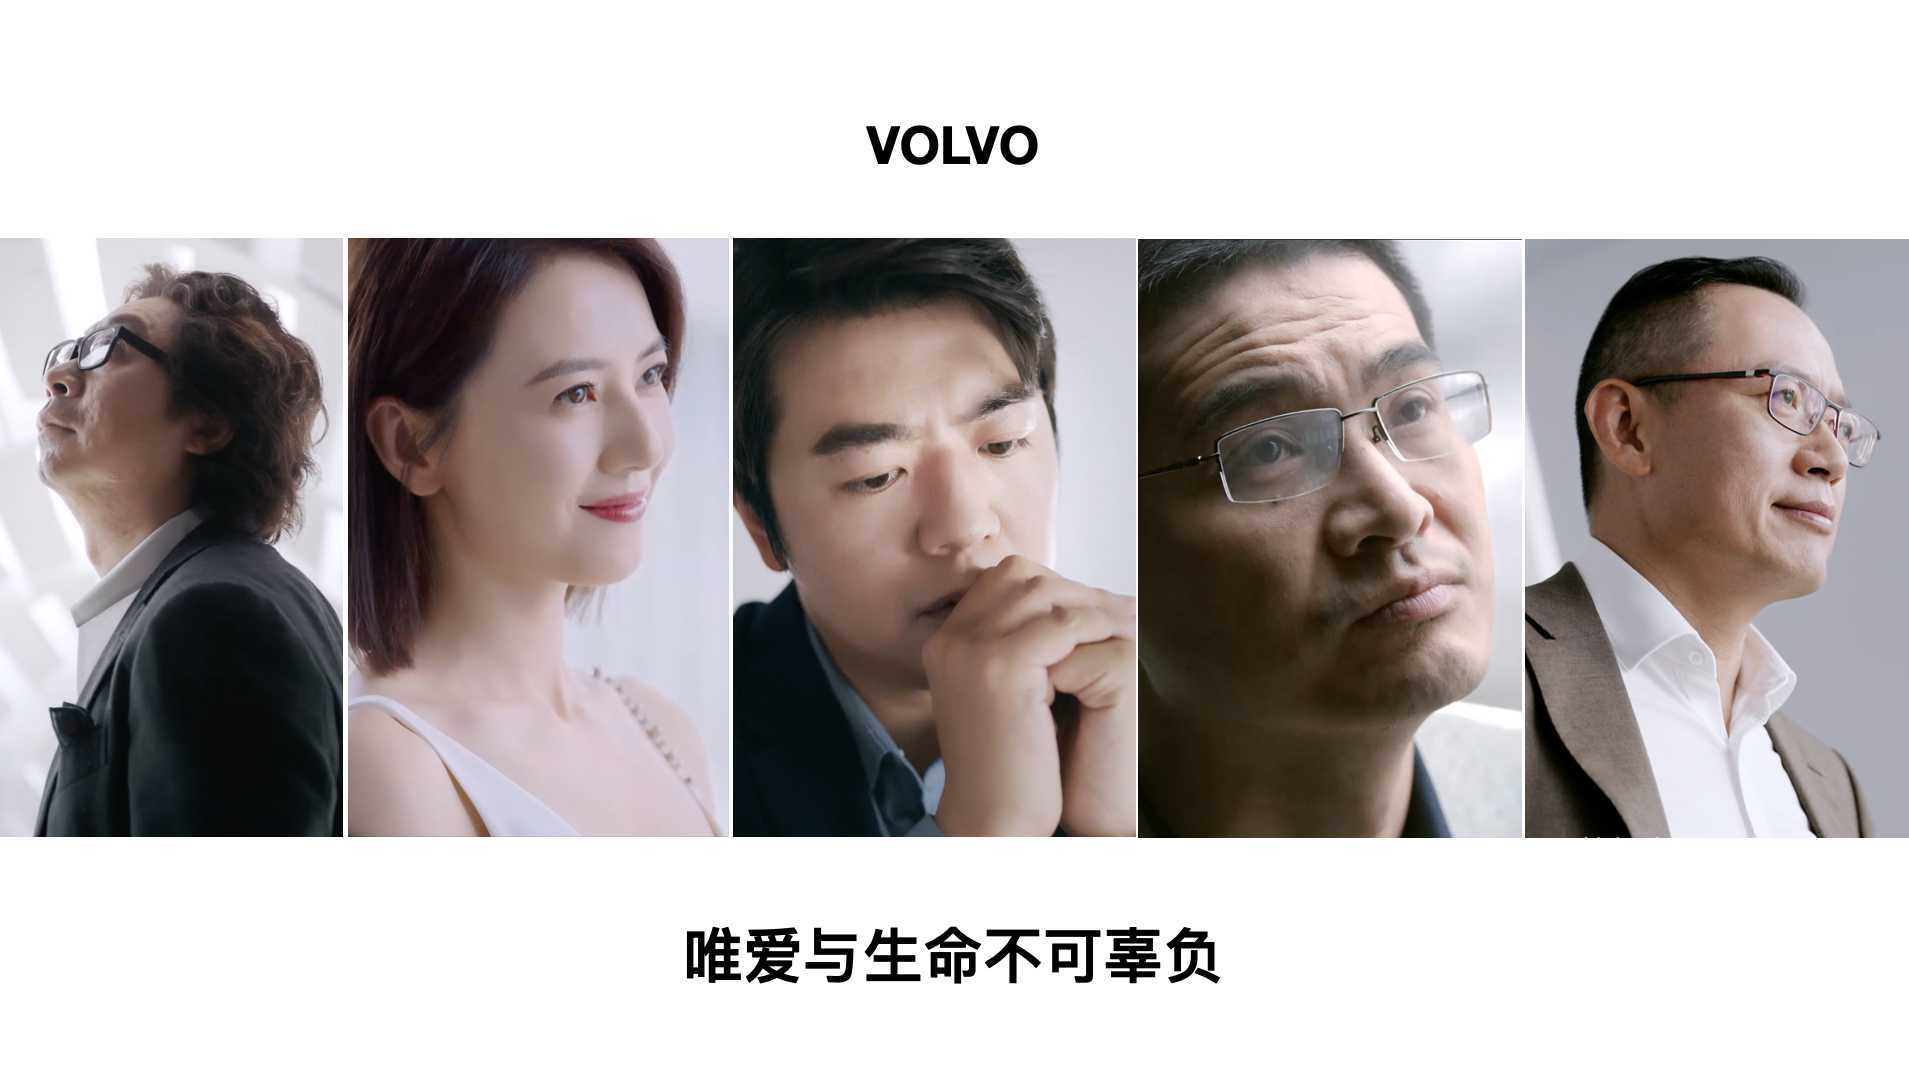 VOLVO Brand film- Yuan Xiao Lin